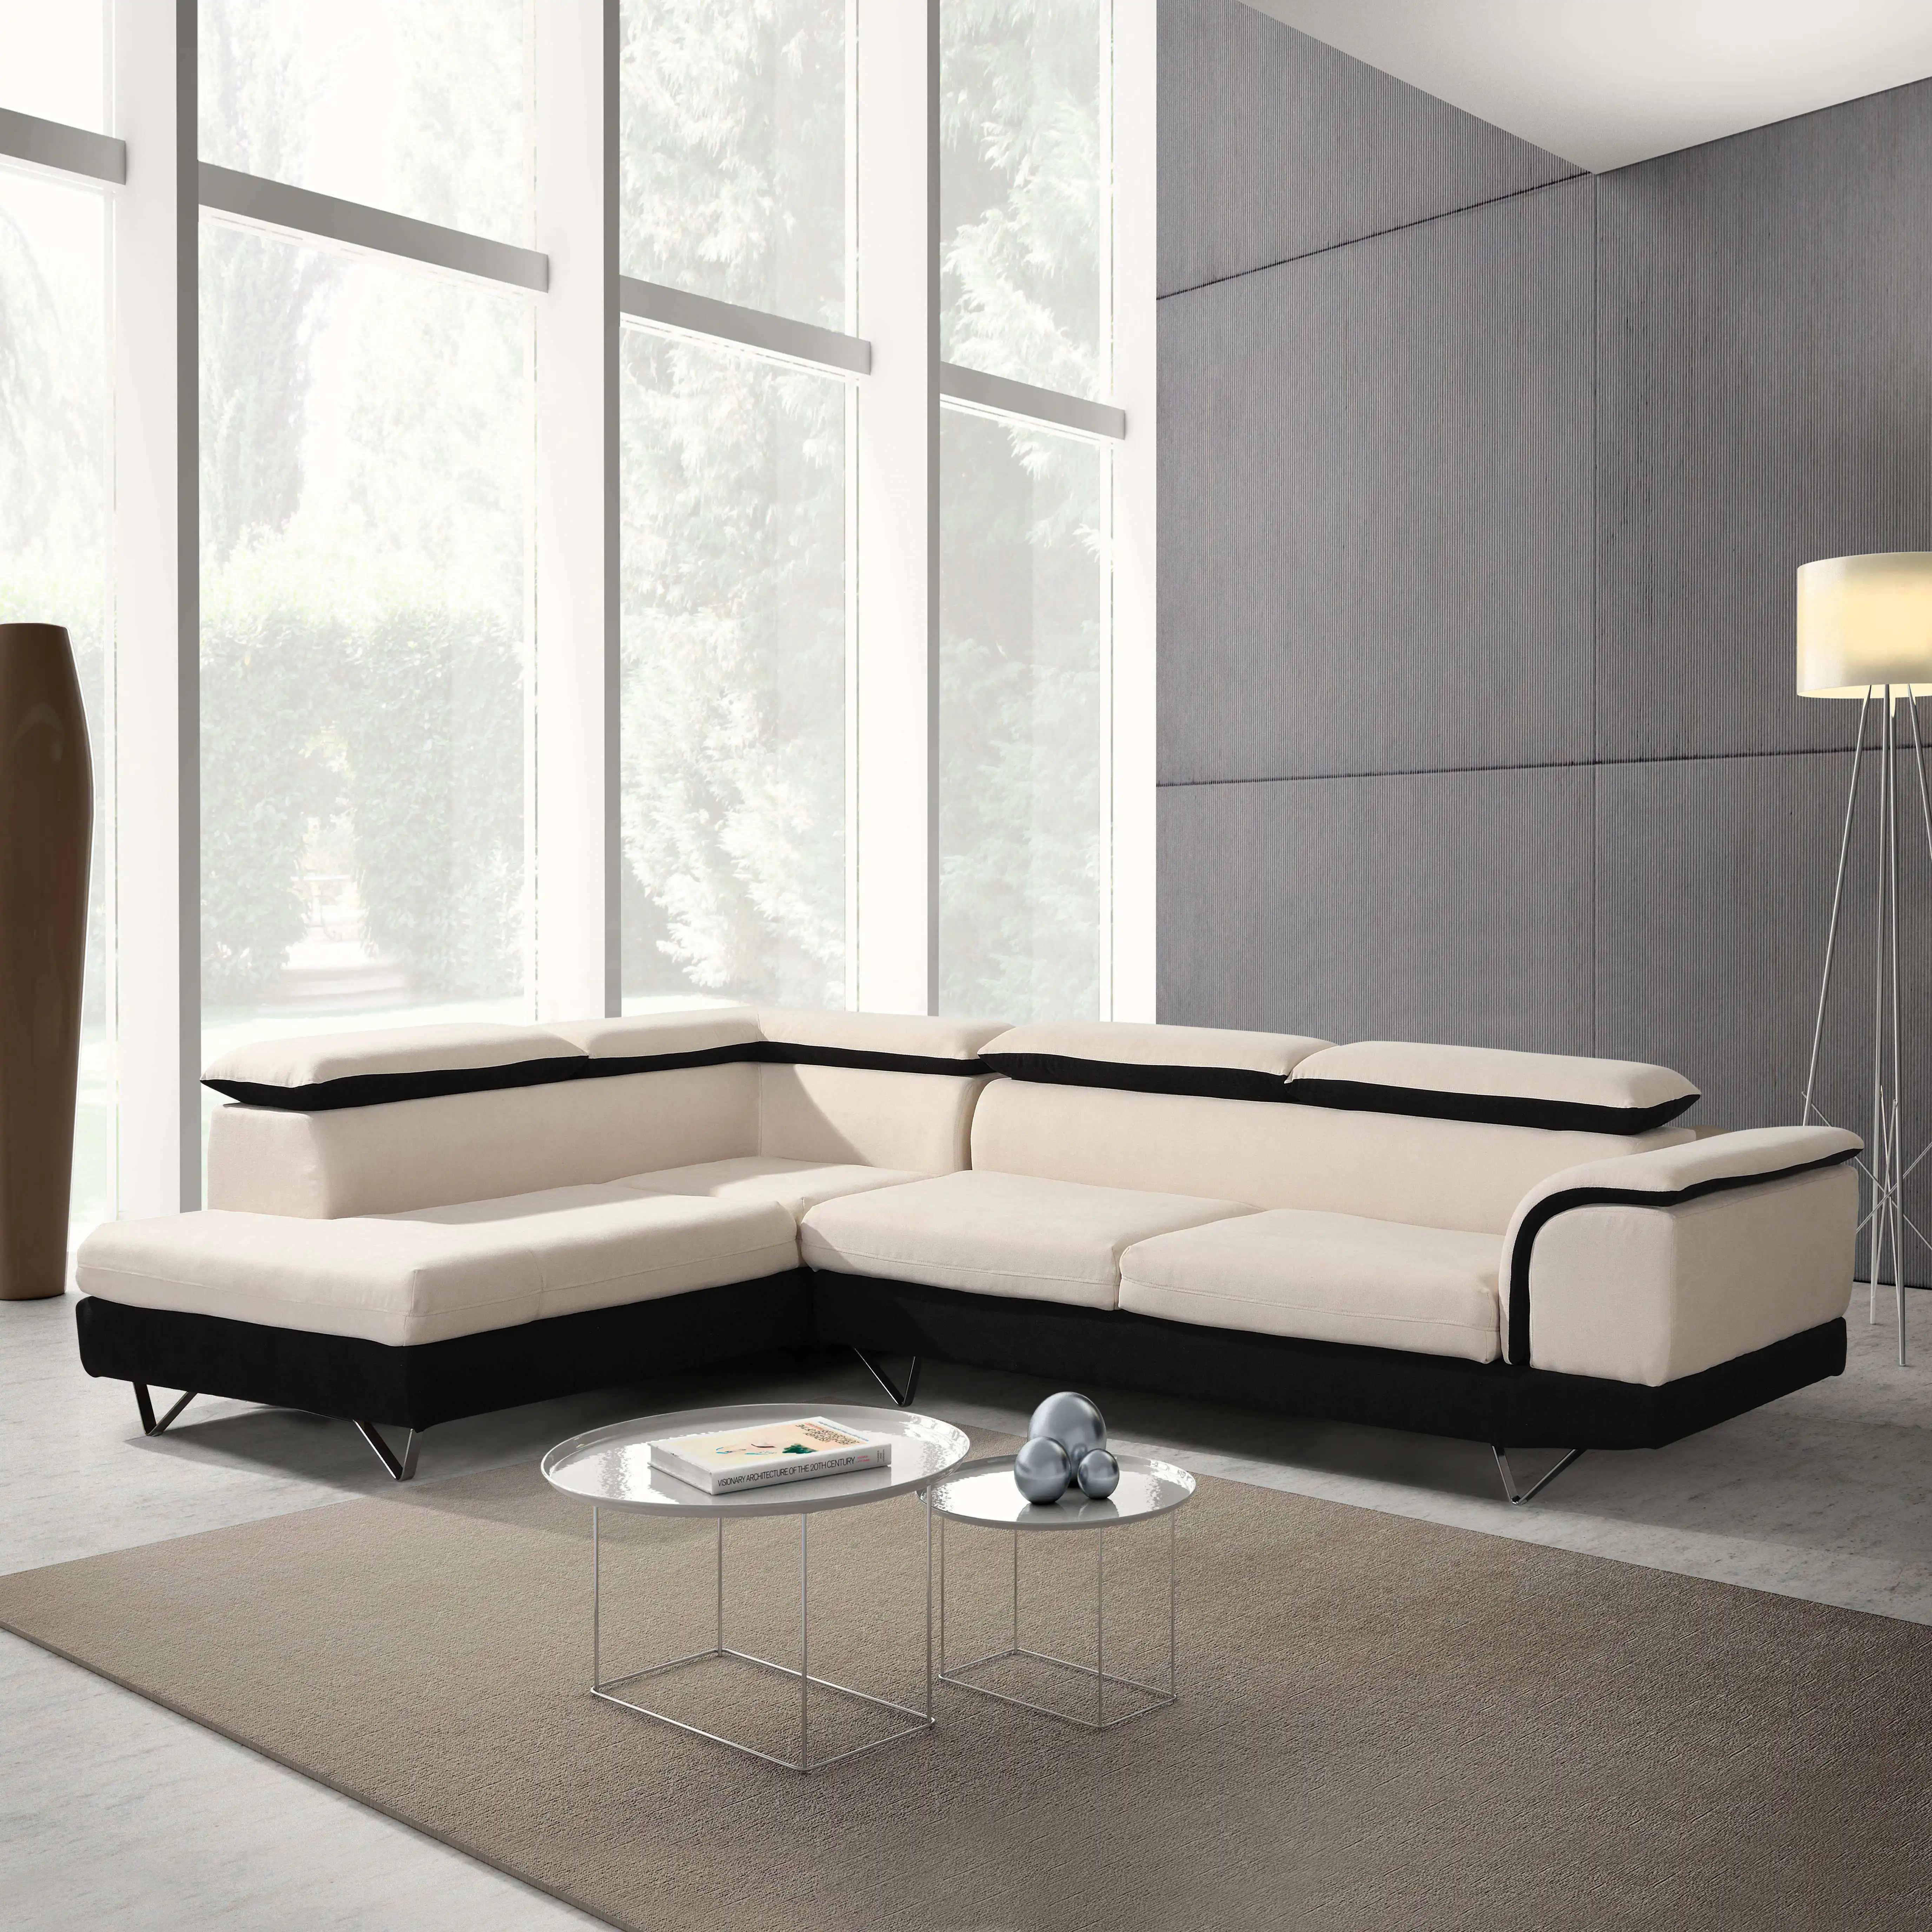 Divano convertibile moderno divano sezionale marocchino set di mobili divano marocchino divano